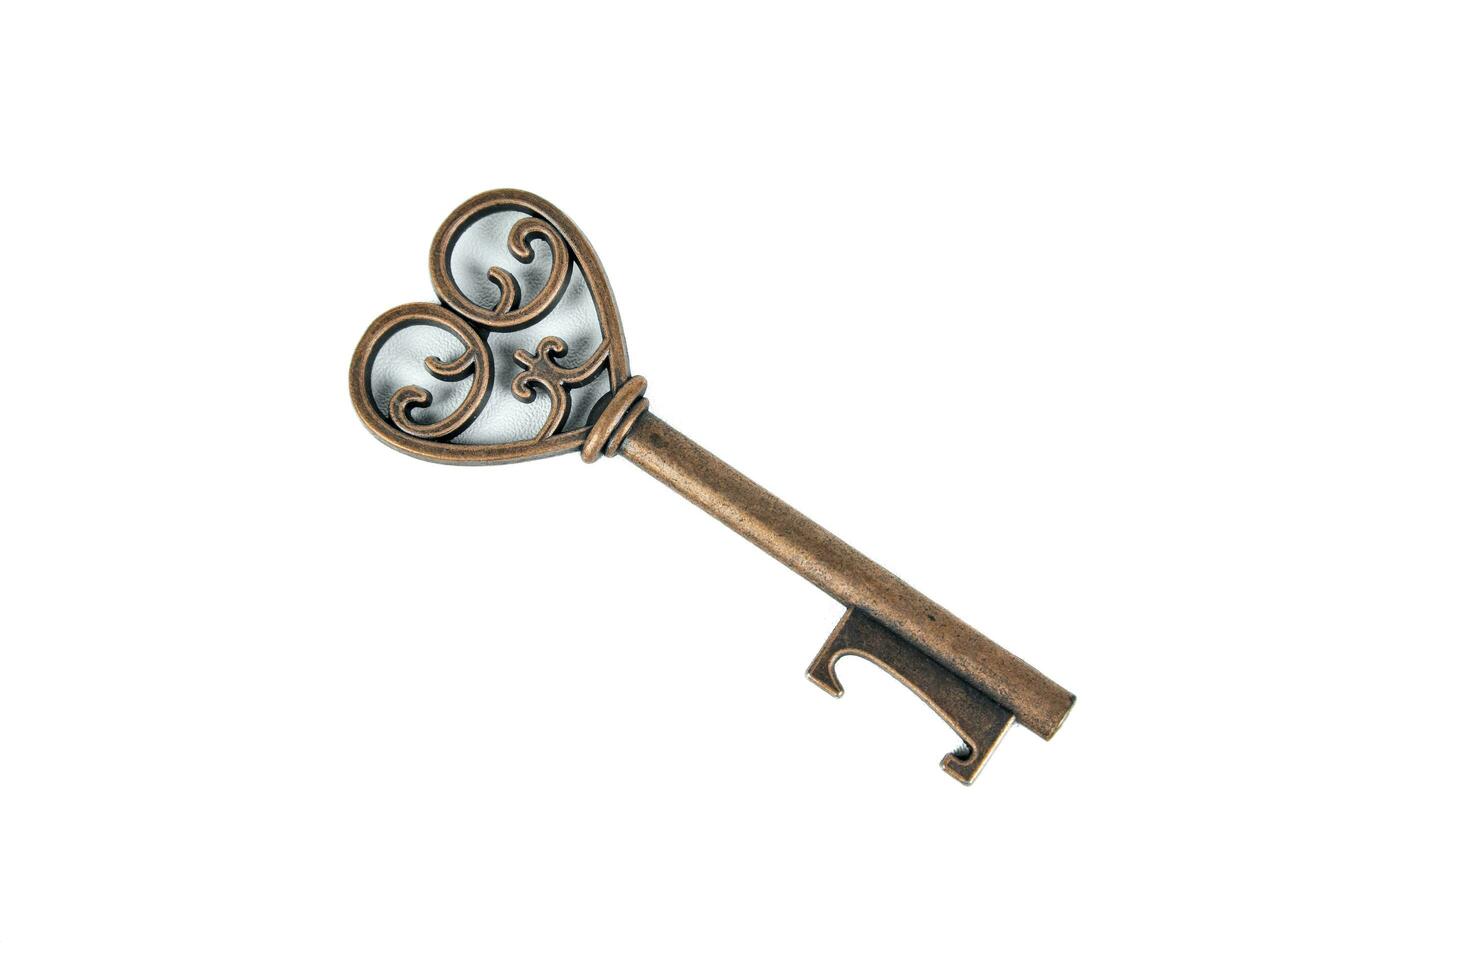 Antique old key on white background photo